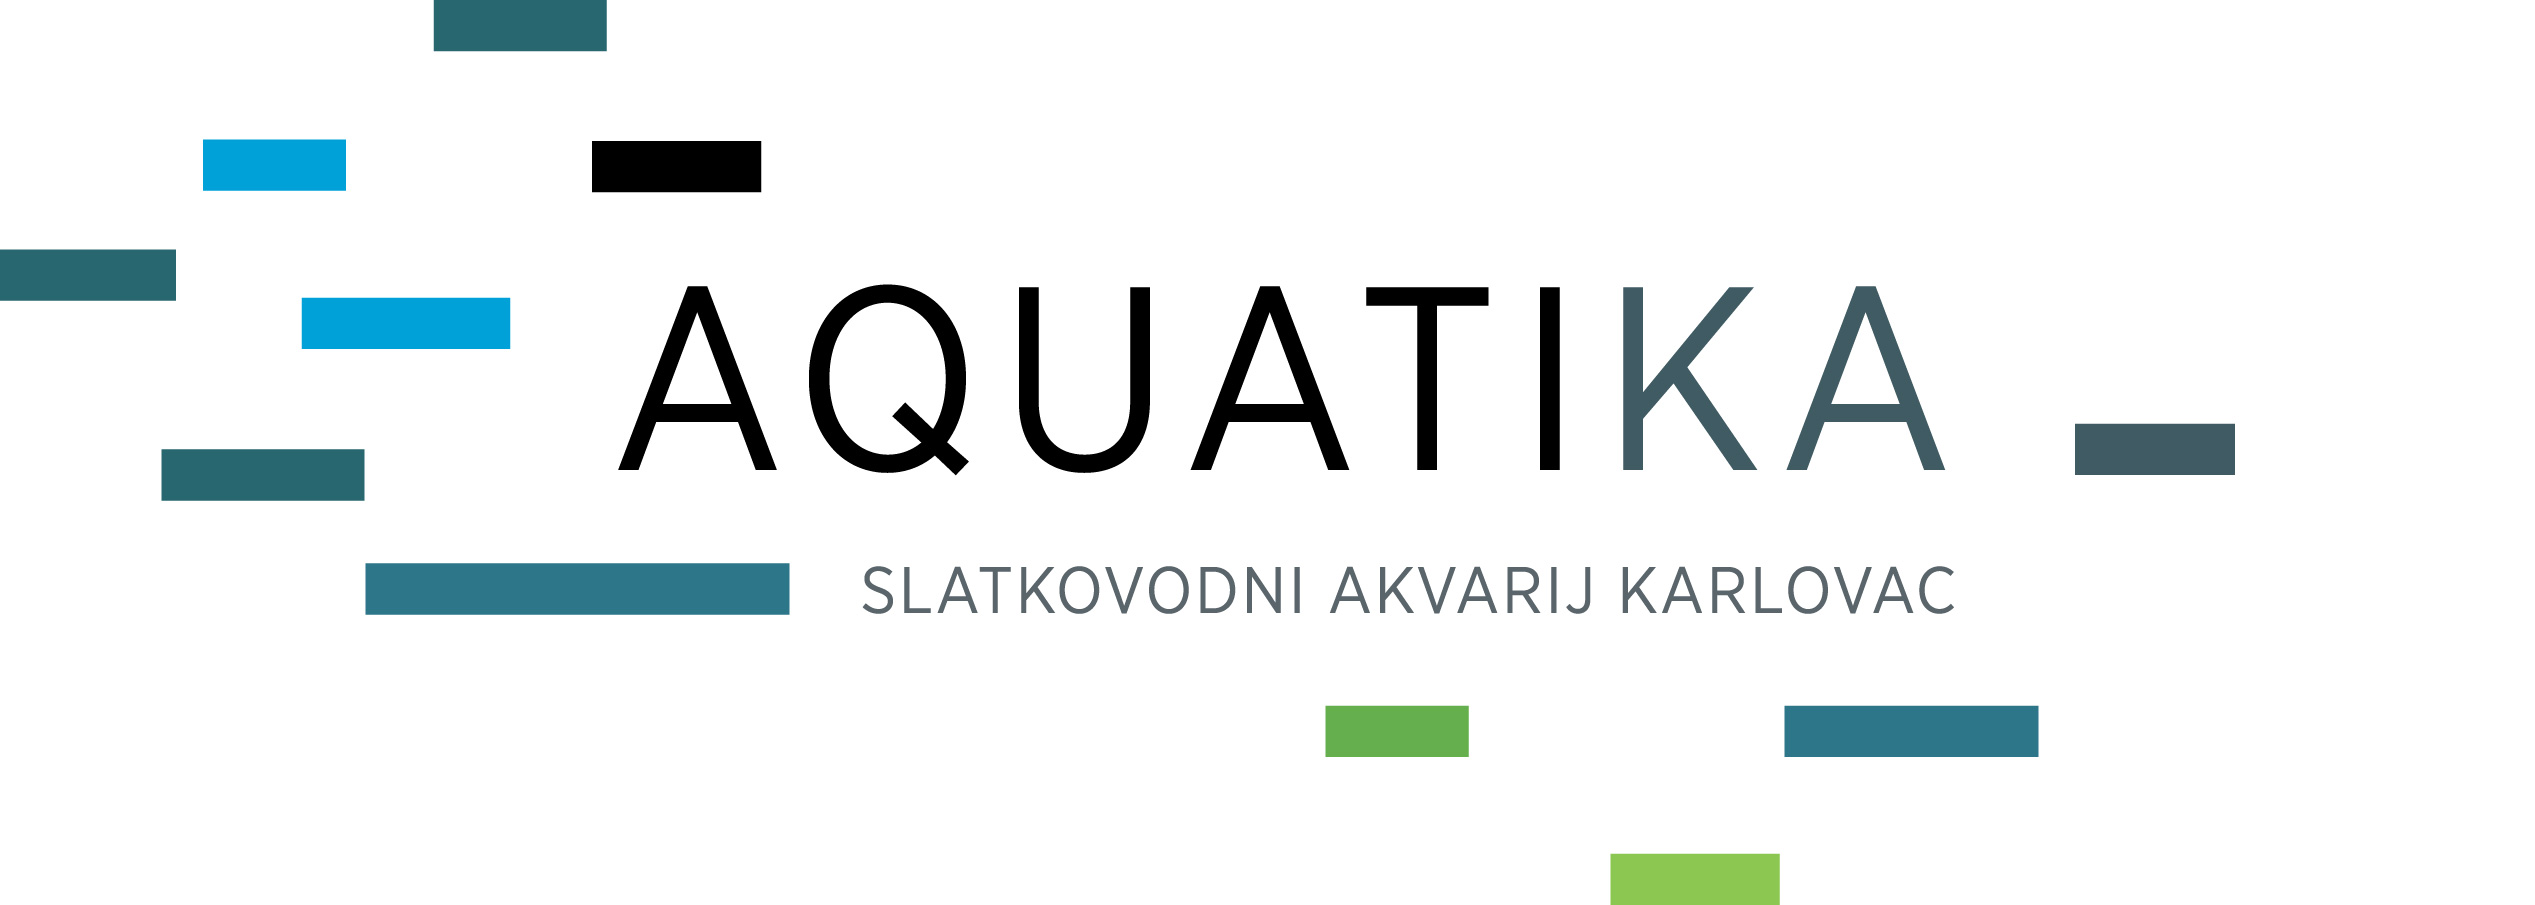 Logotip-AQUATIKA